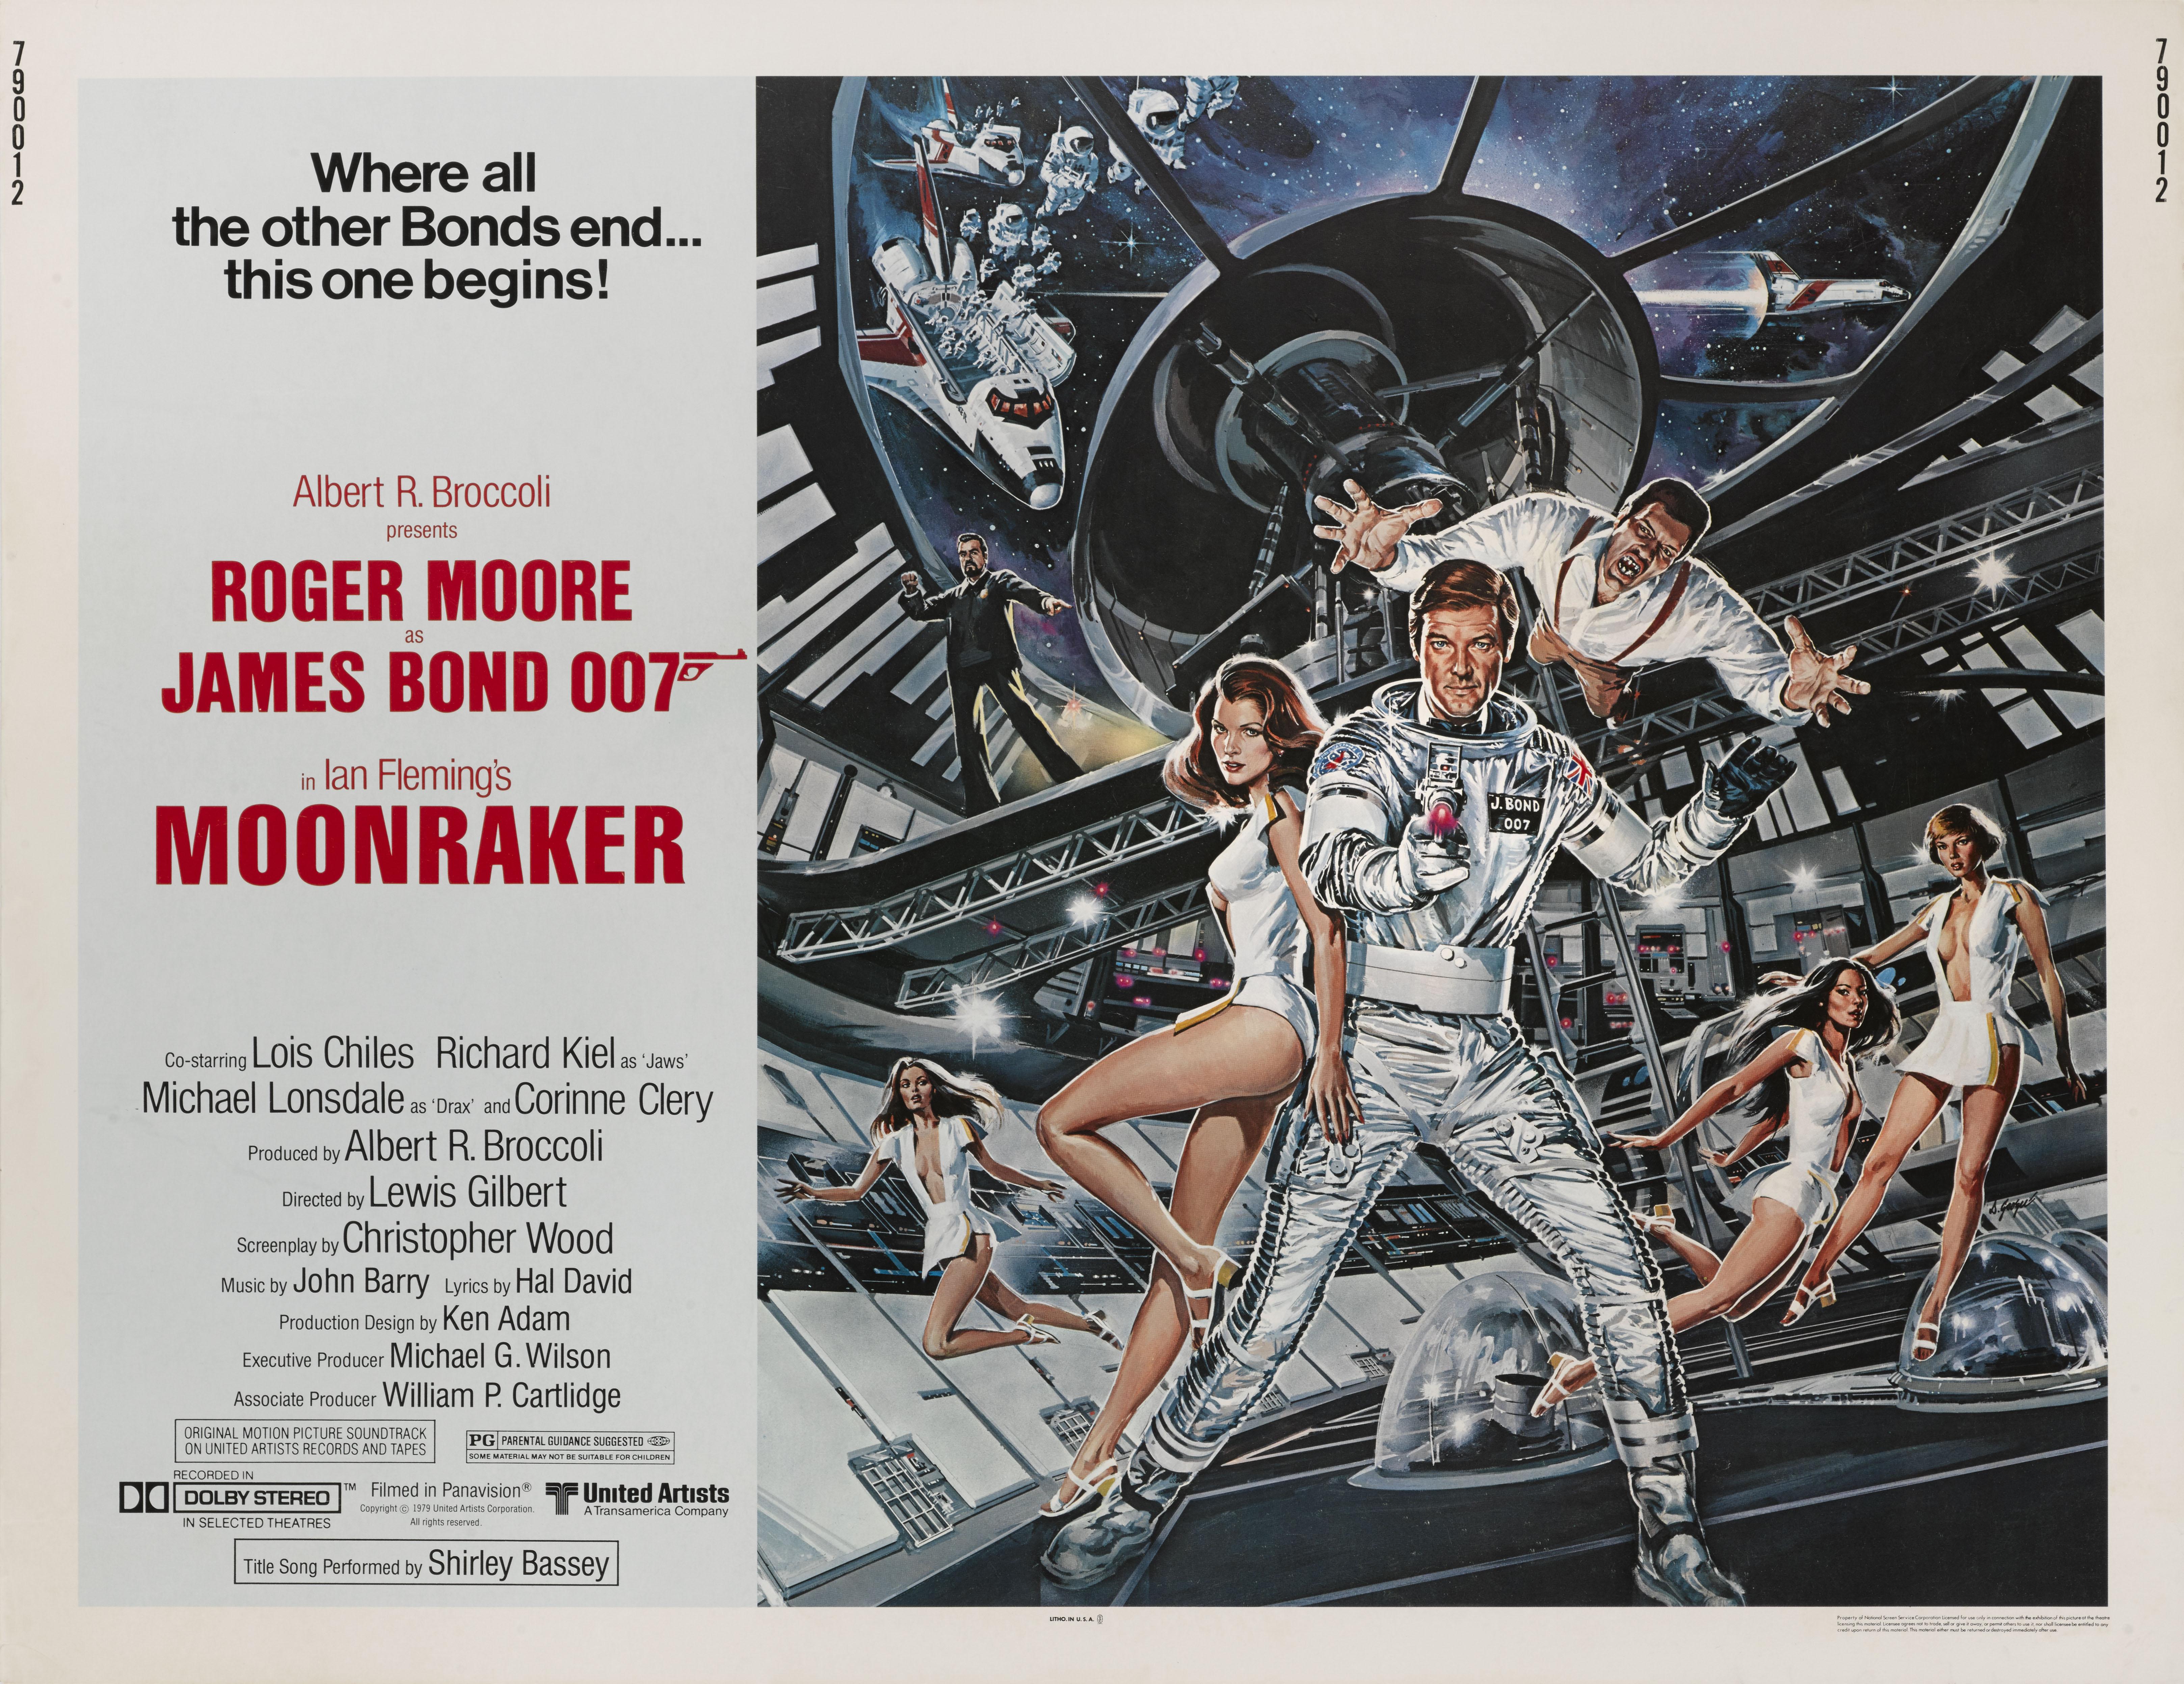 Original US-Filmplakat für Moonraker 1979.
Das Kunstwerk auf diesem Plakat stammt von Dan Goozee (geb. 1943)
Dieser Film war der dritte und letzte Bond-Film unter der Regie von Lewis Gilbert. Es war der elfte James-Bond-Film von Eon Productions